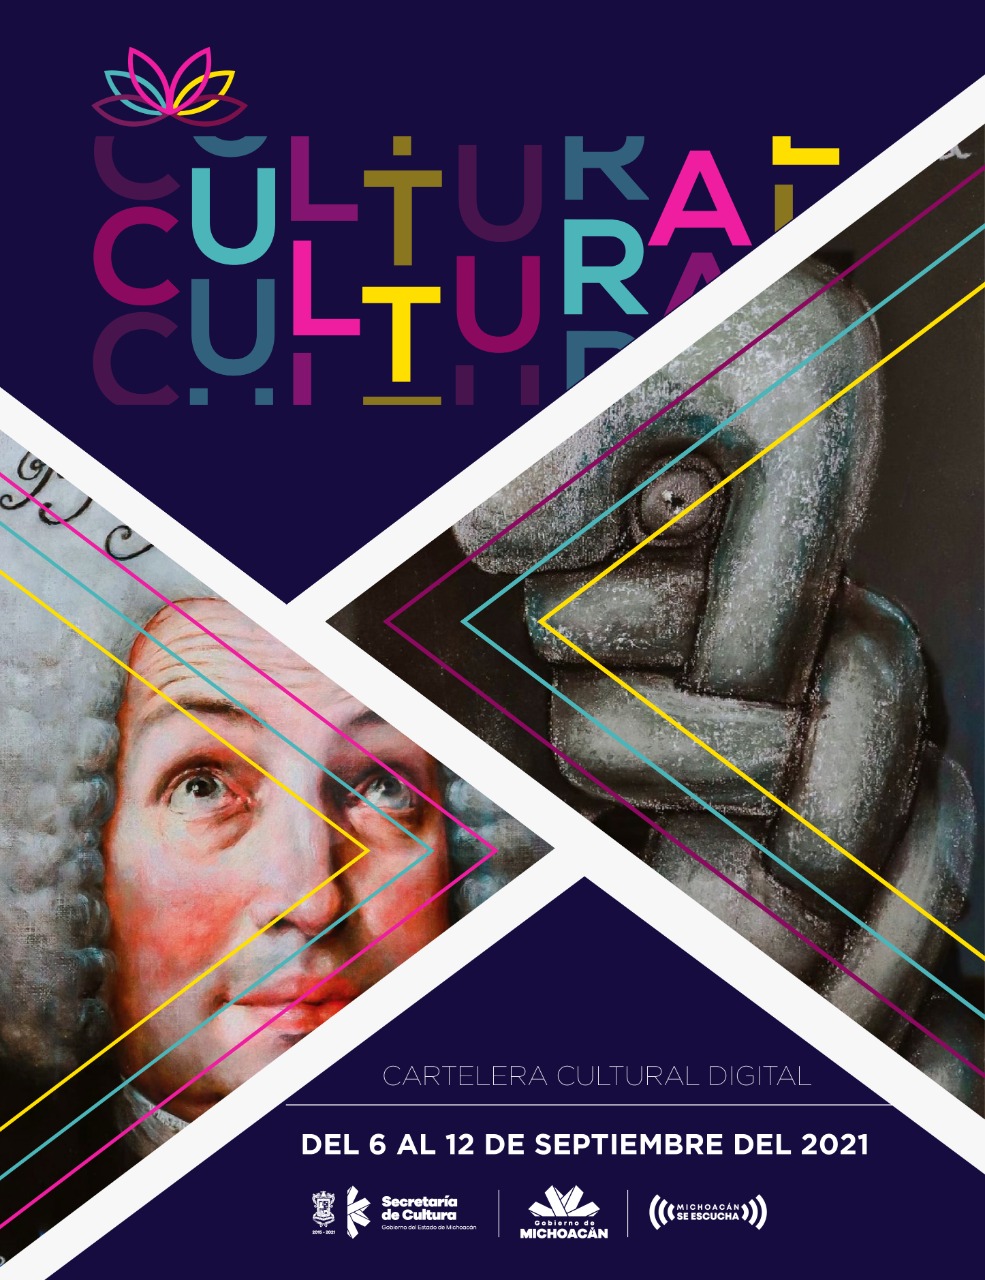 Cultura Cartelera Cultural Del 6 Al 12 De Septiembre Del 2021 3010